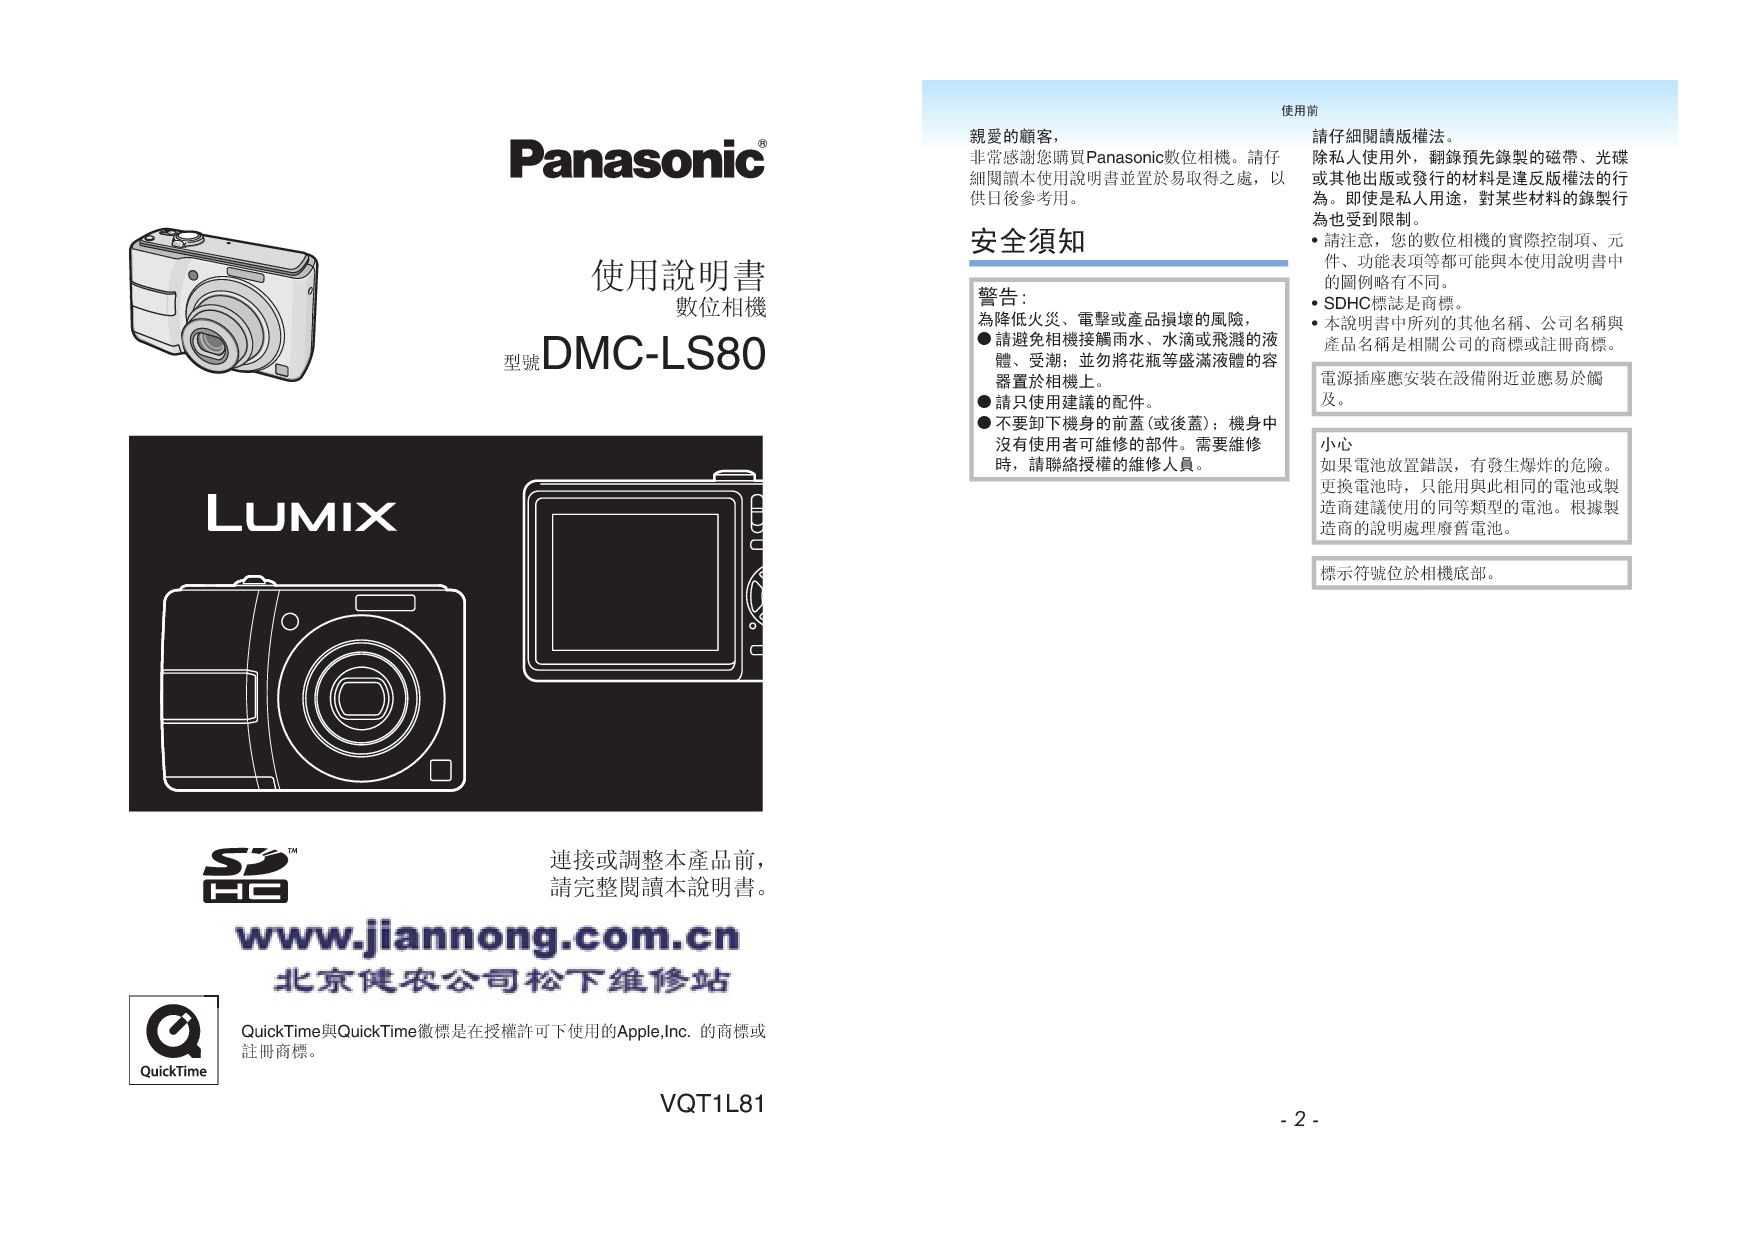 松下 Panasonic DMC-LS80 说明书 封面